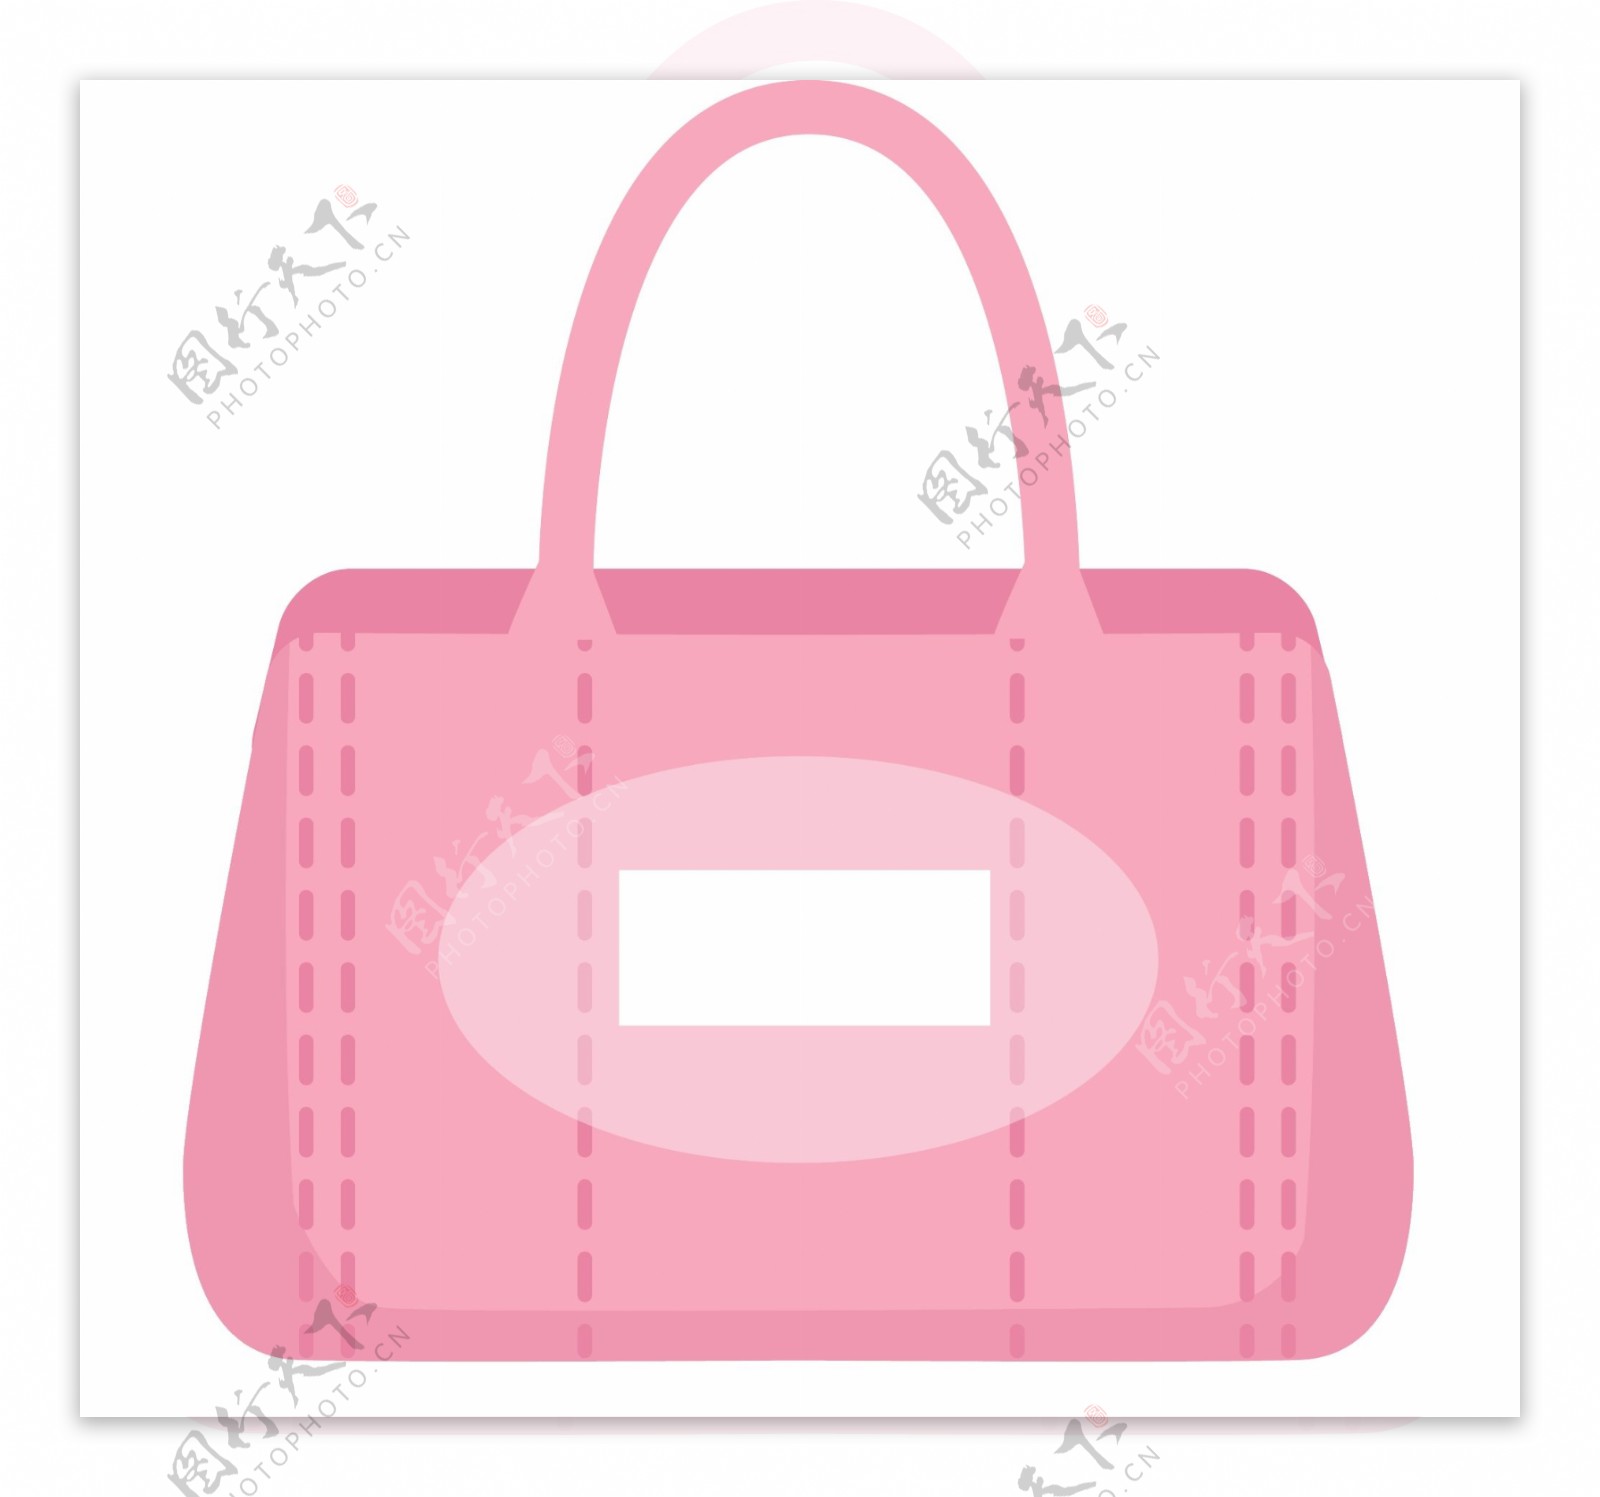 粉红色时尚手提包插画